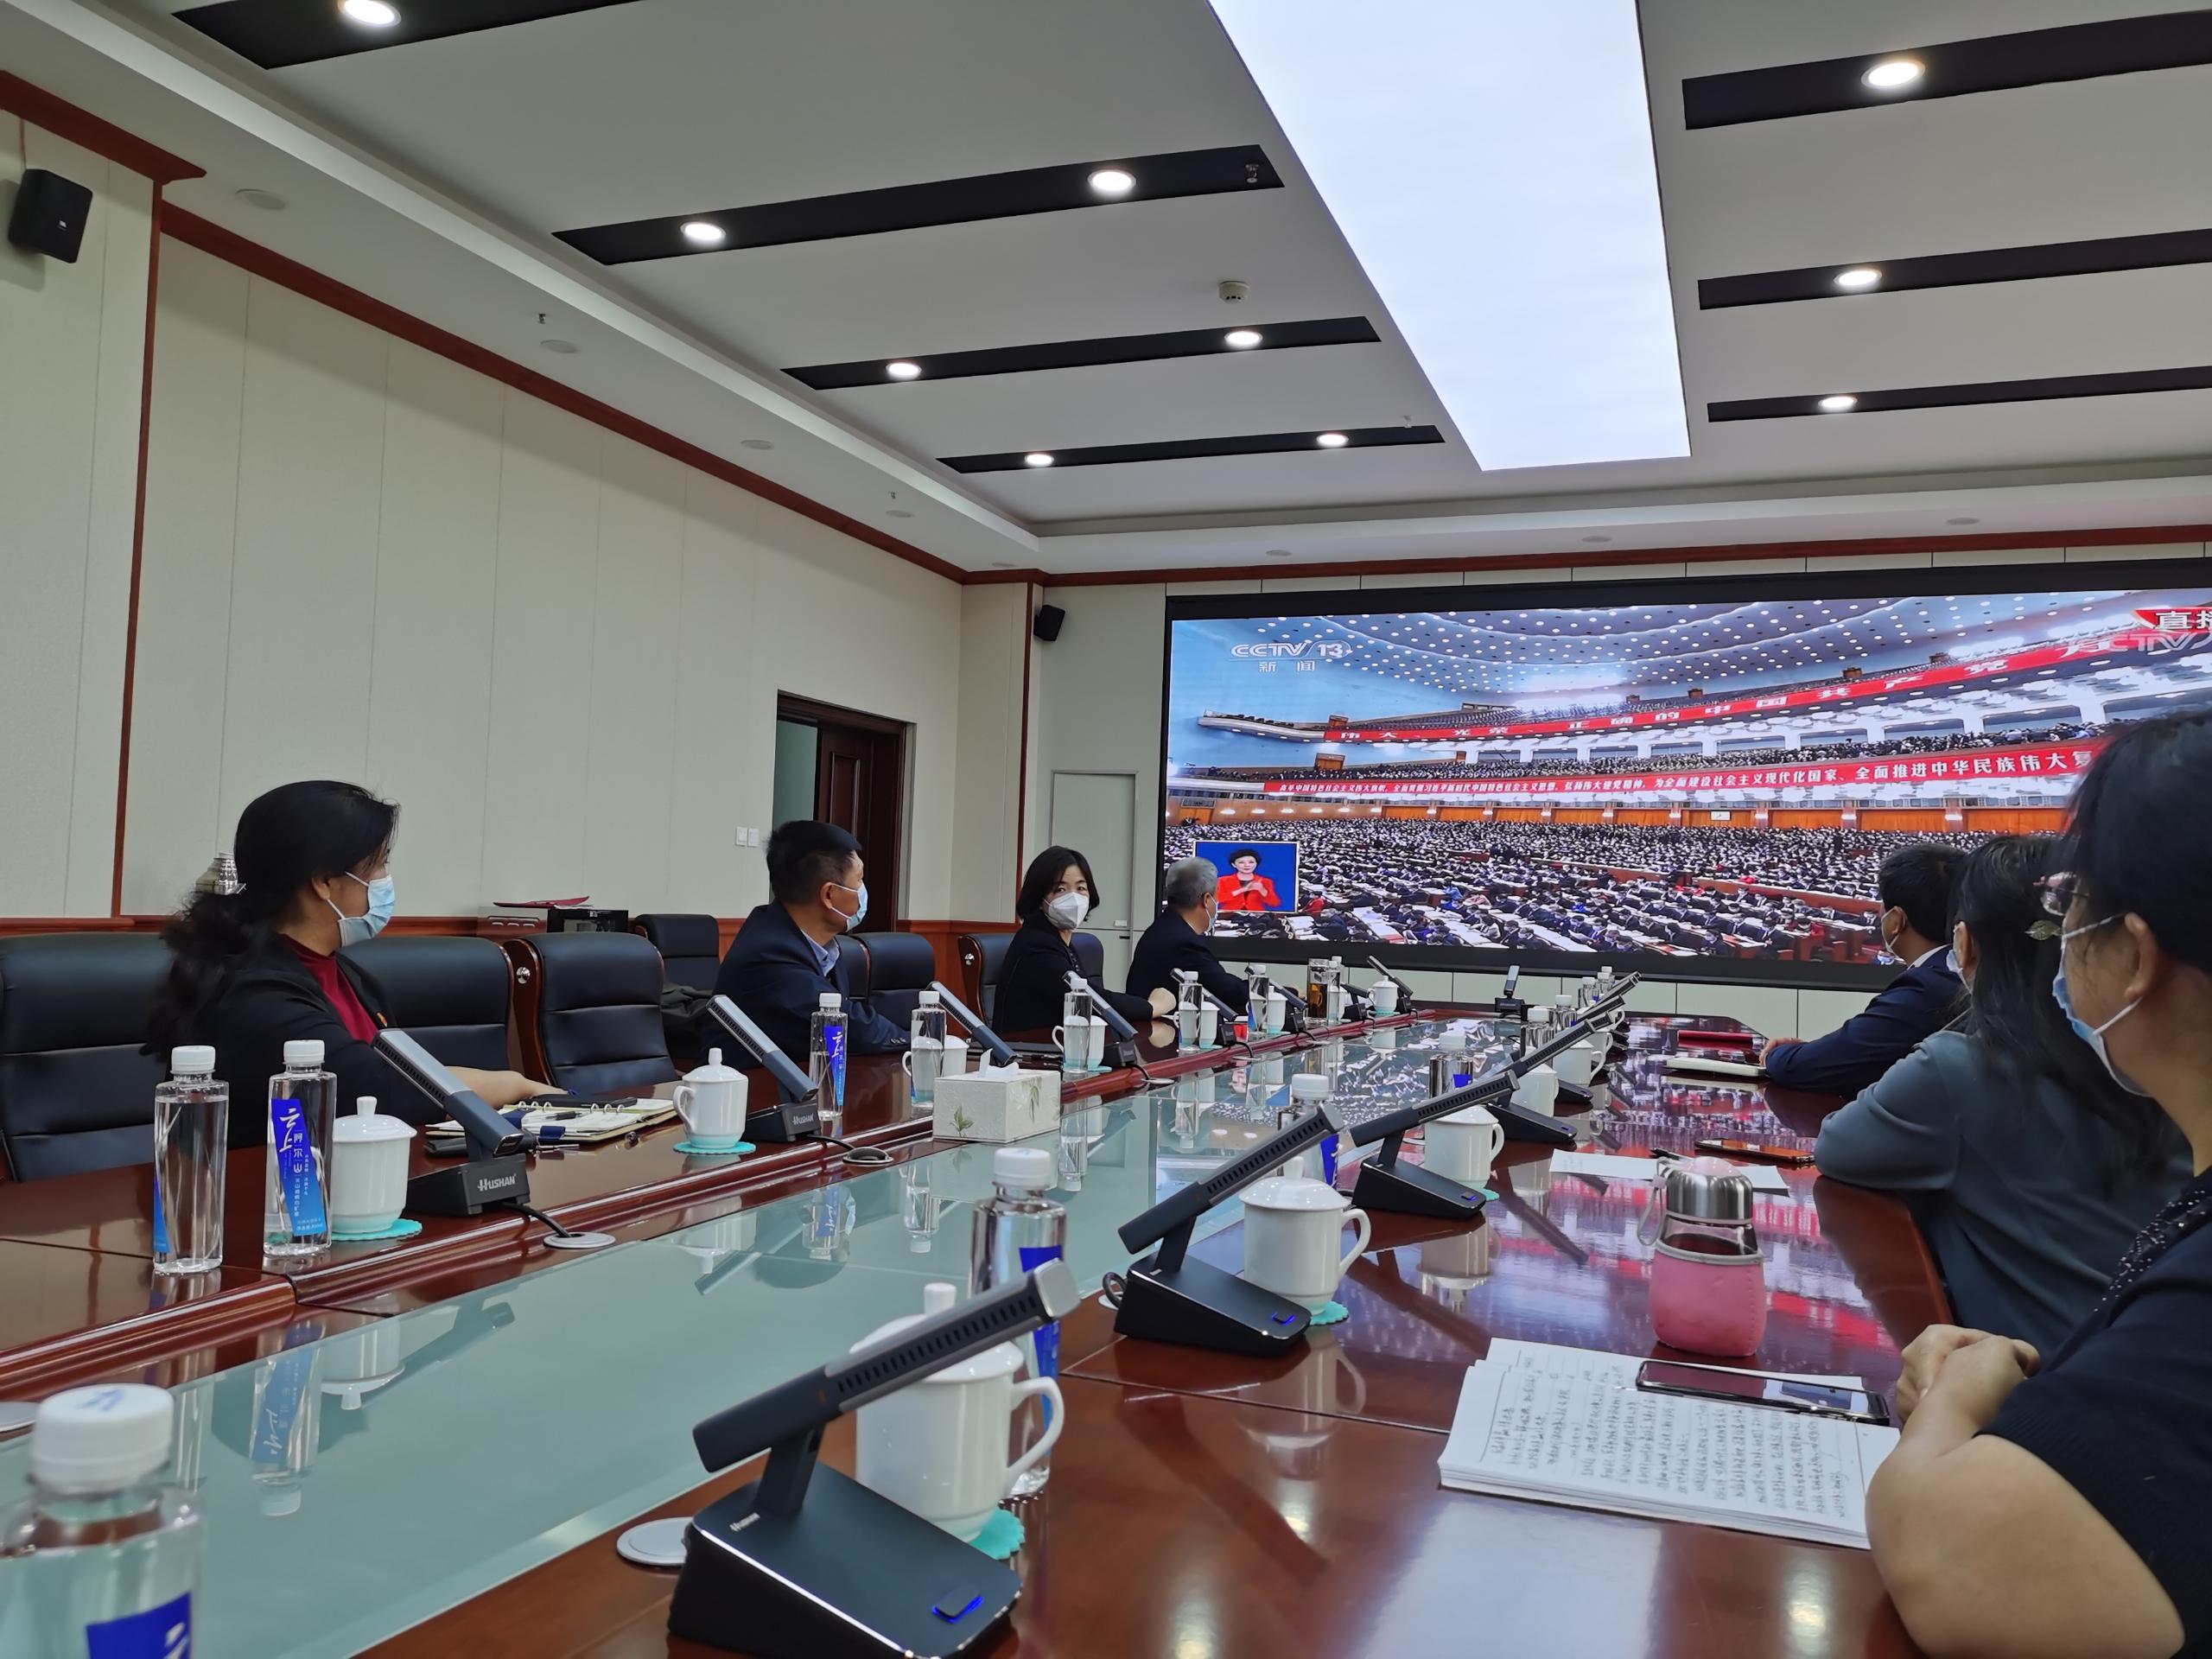 建筑工程系 全体教师收看中国共产党第二十次全国代表大会开幕盛况